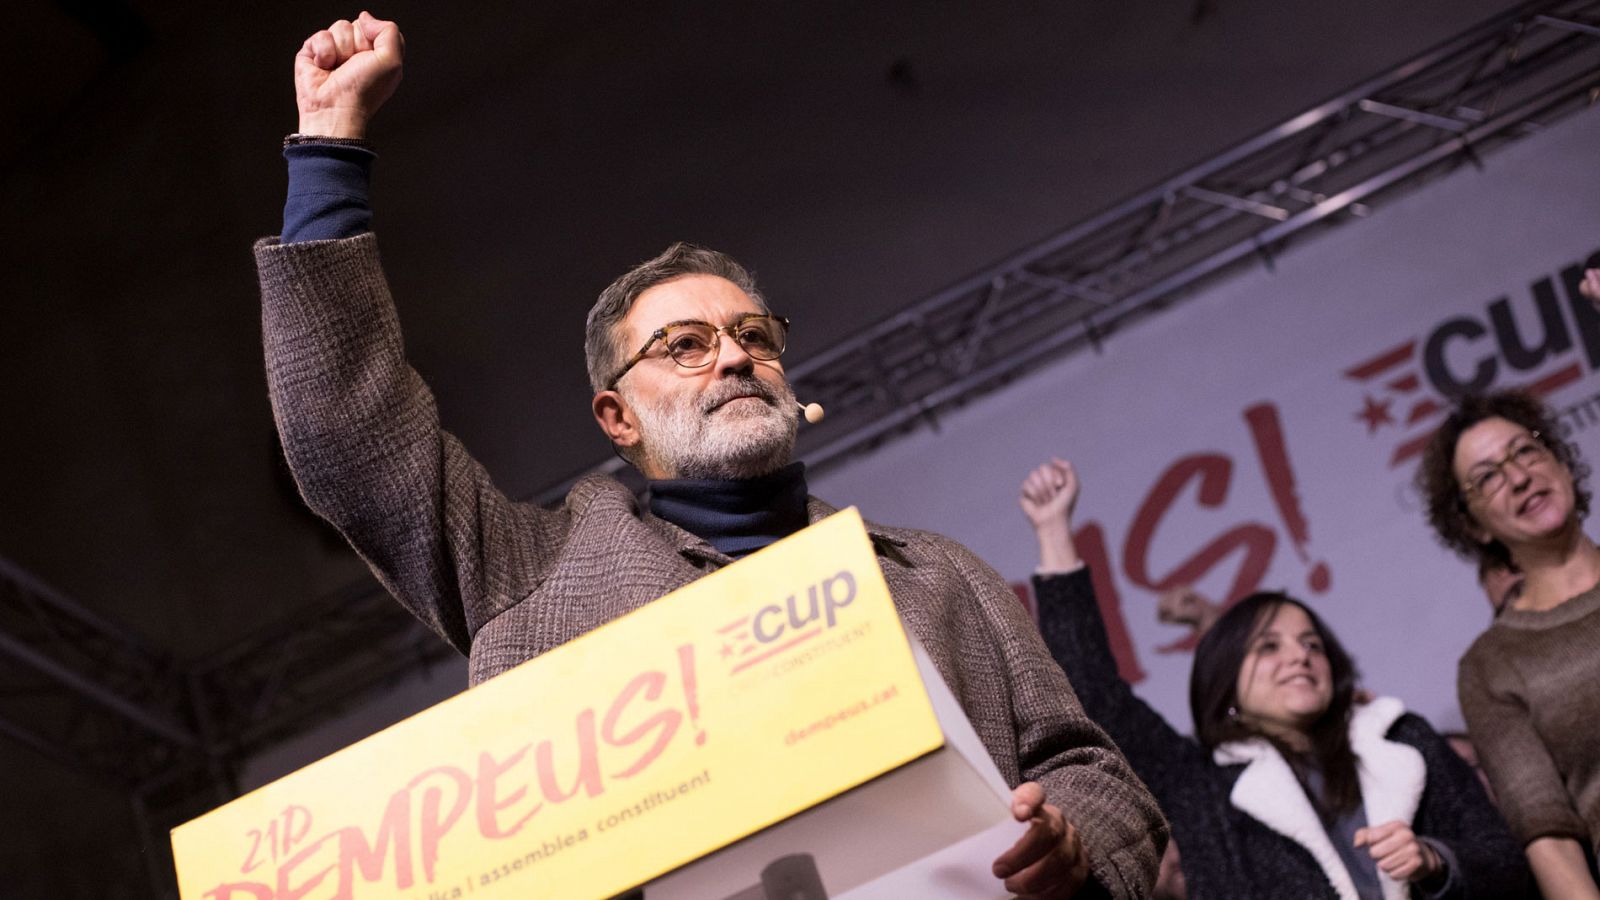 Elecciones catalanas: Riera (CUP) celebra una "mayoría republicana y de izquierdas" en el independentismo tras el 21D